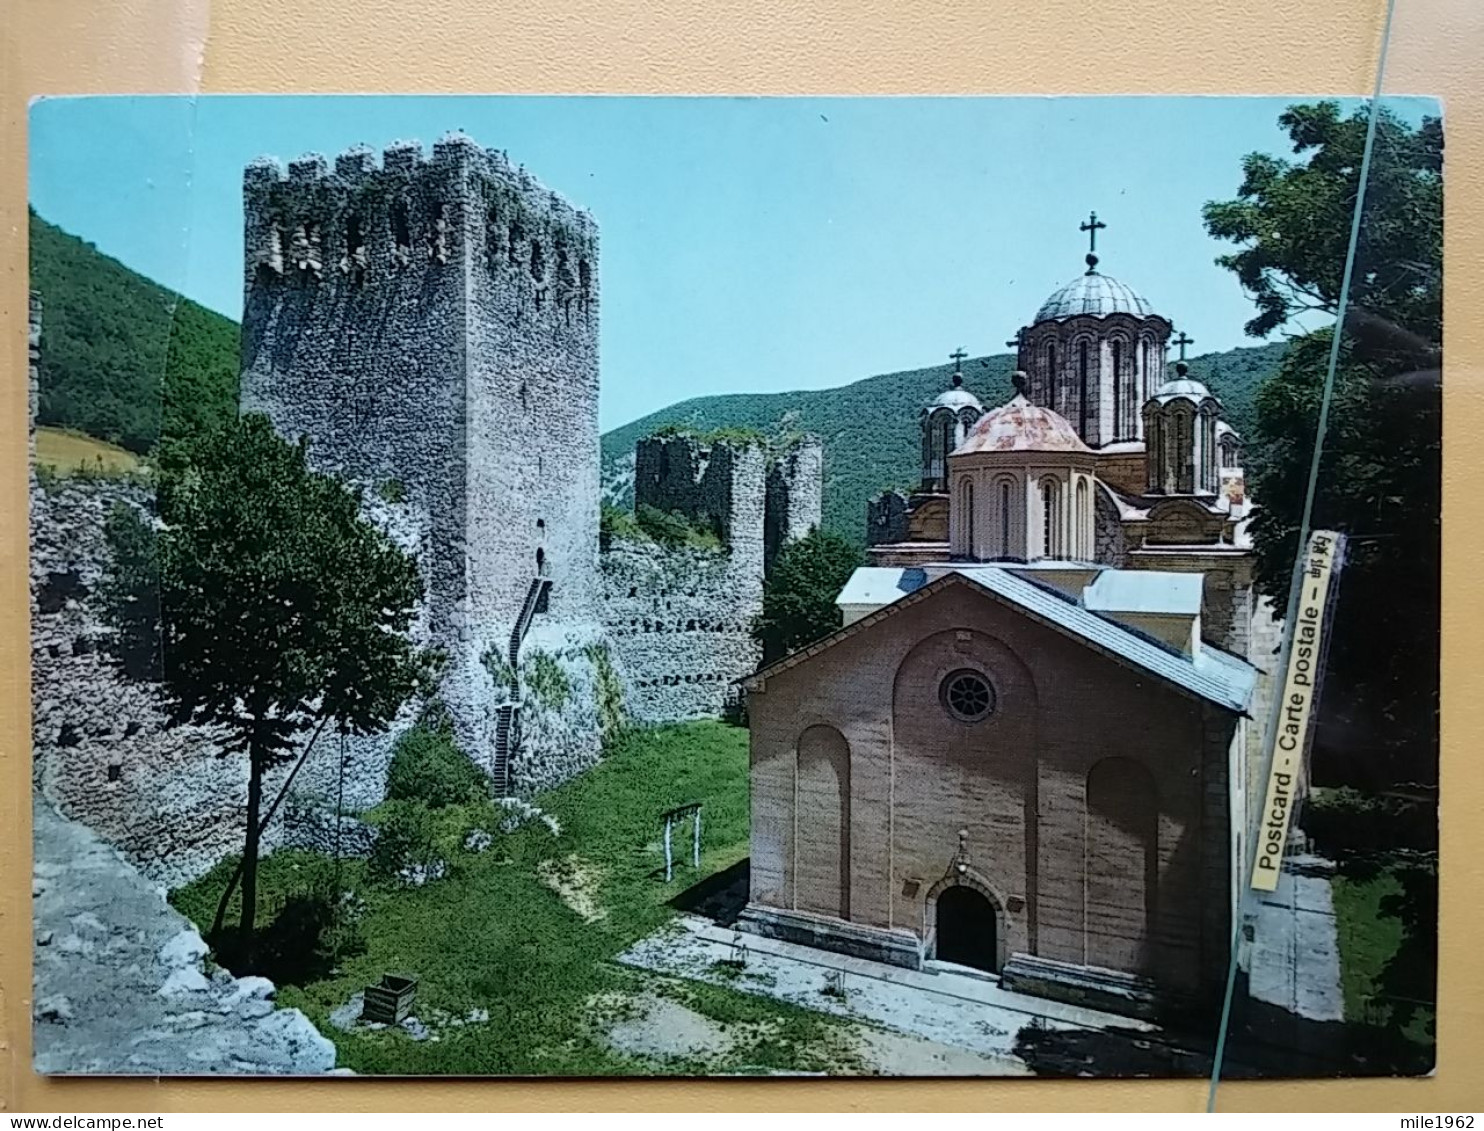 KOV 515-51 - SERBIA, ORTHODOX MONASTERY MANASIJA - Serbien